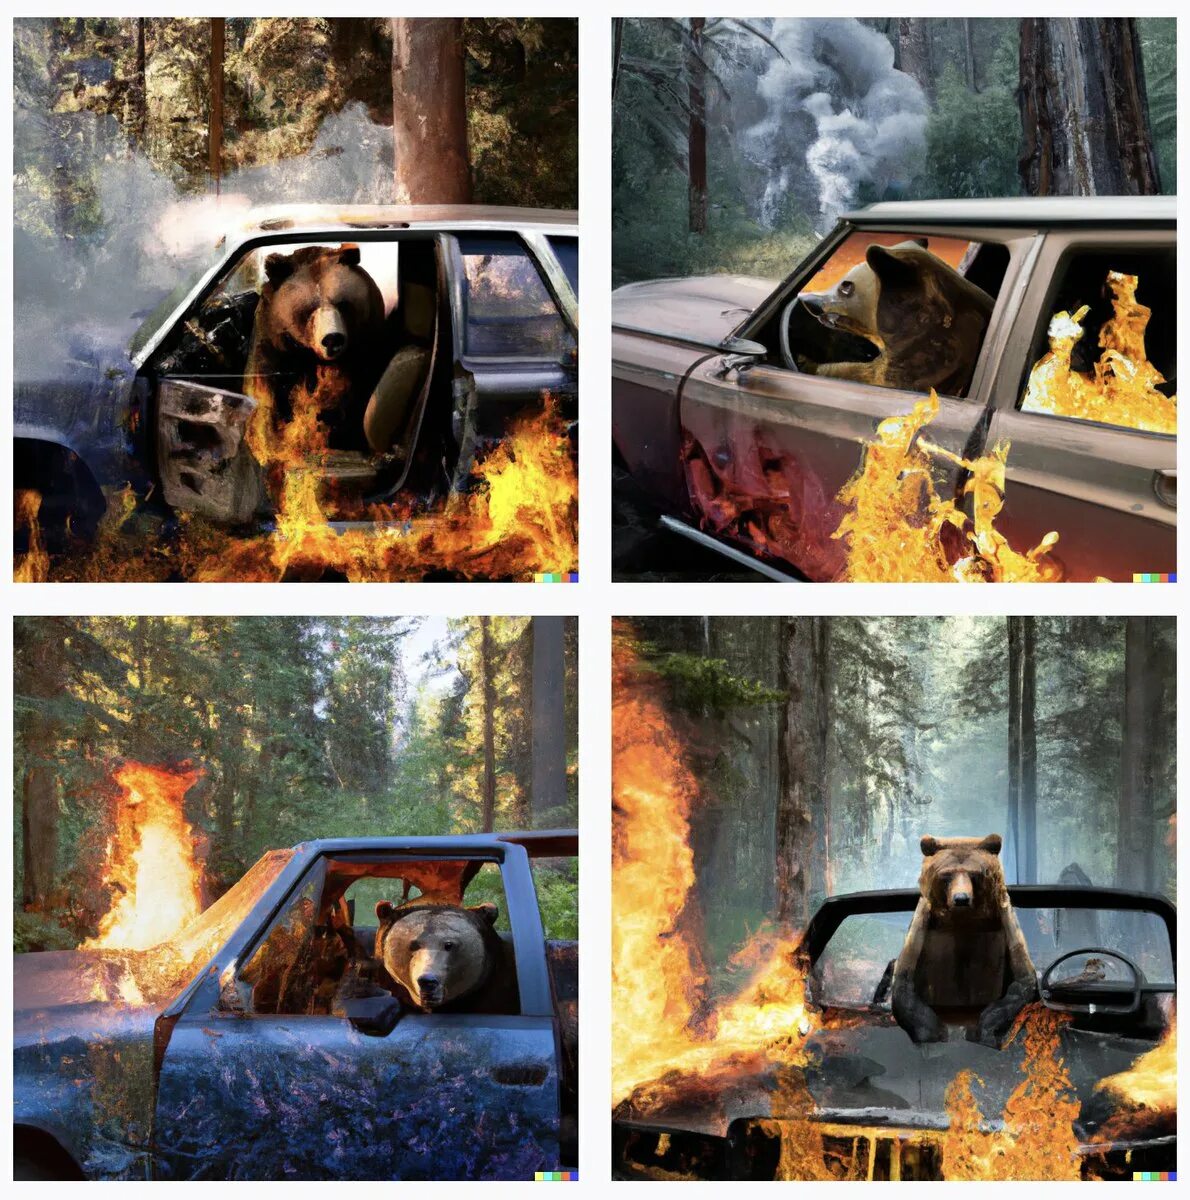 Медведь сгорел в машине. Медведь в машине горит. Шёл медведь по лесу видит машина горит. Мишка и горящая машина. Увидел медведь горящую машину.